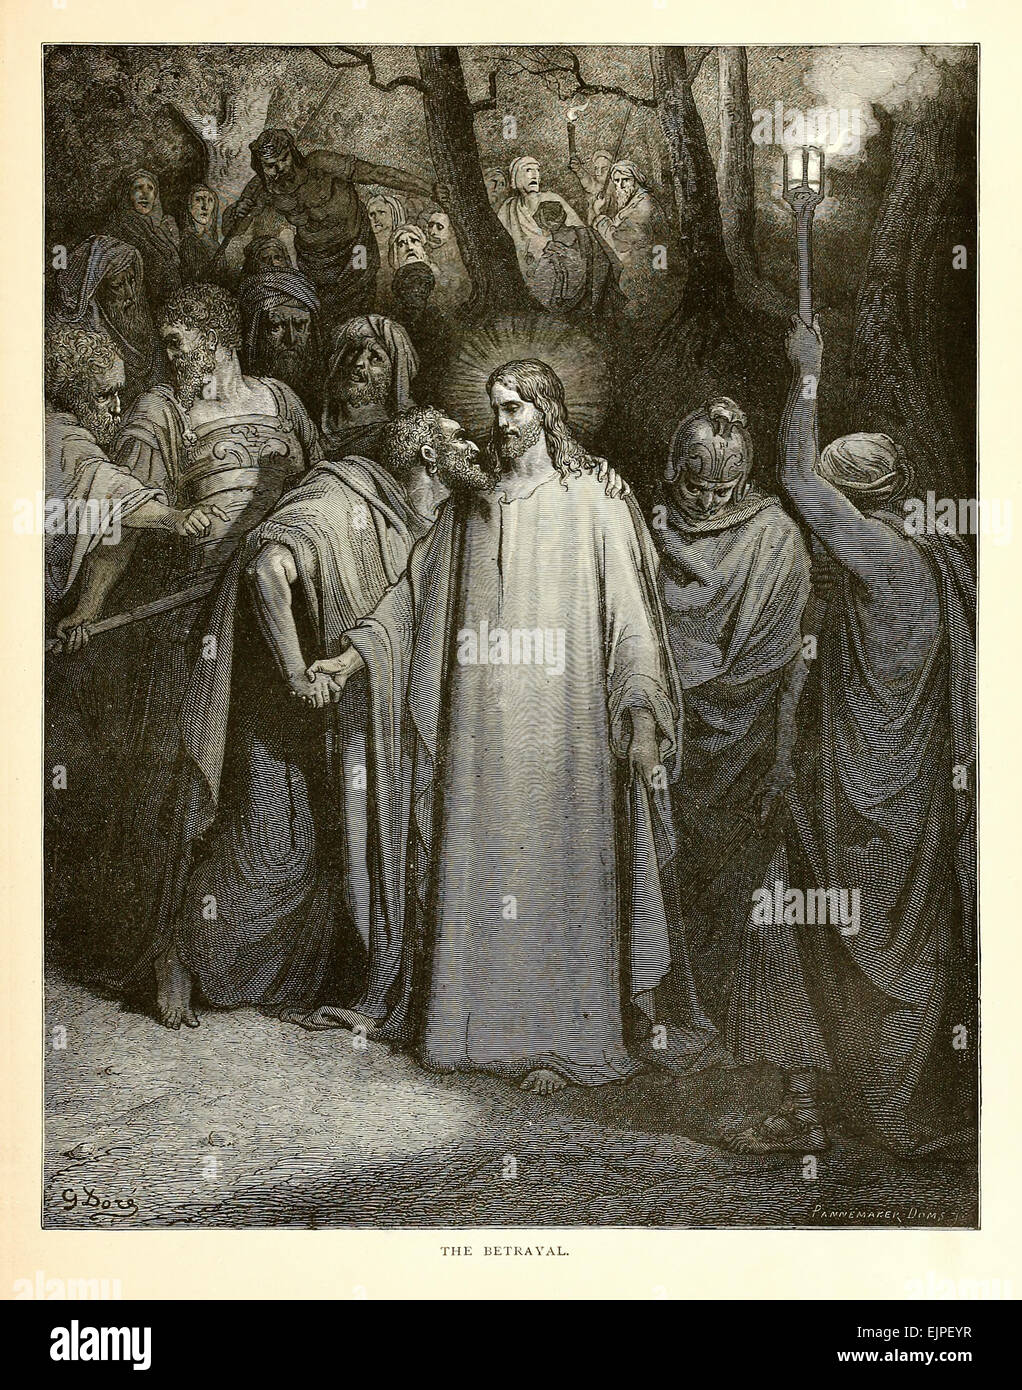 La Trahison - Illustration par Paul Gustave Doré (1832-1883) à partir de 1880 édition de la Bible. Voir la description pour plus d'informations. Banque D'Images